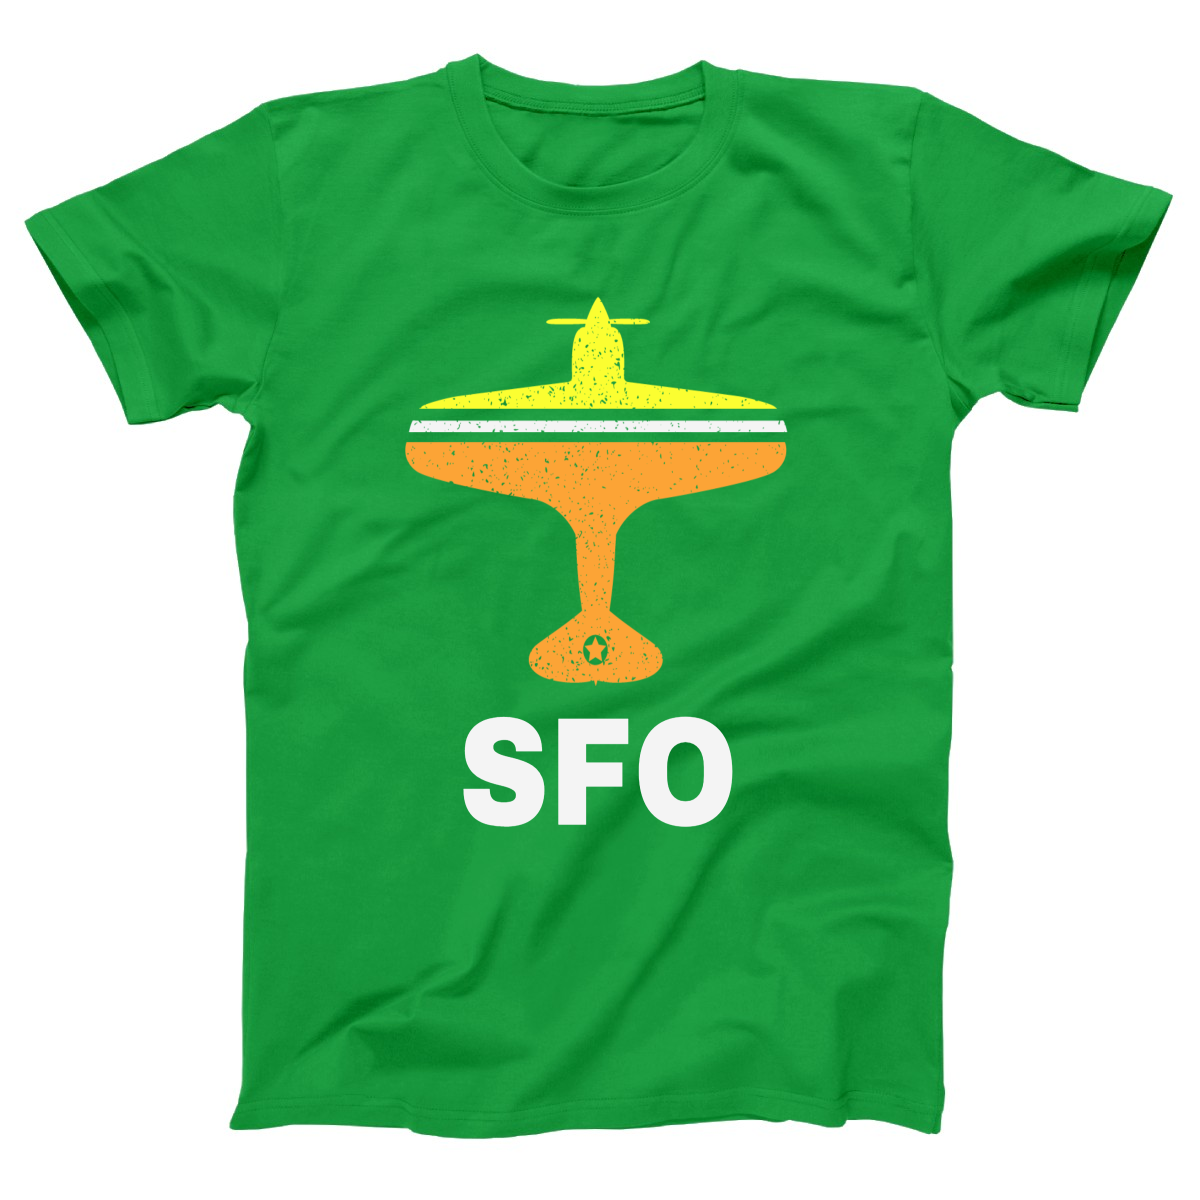 Fly San Francisco SFO Airport Women's T-shirt | Green